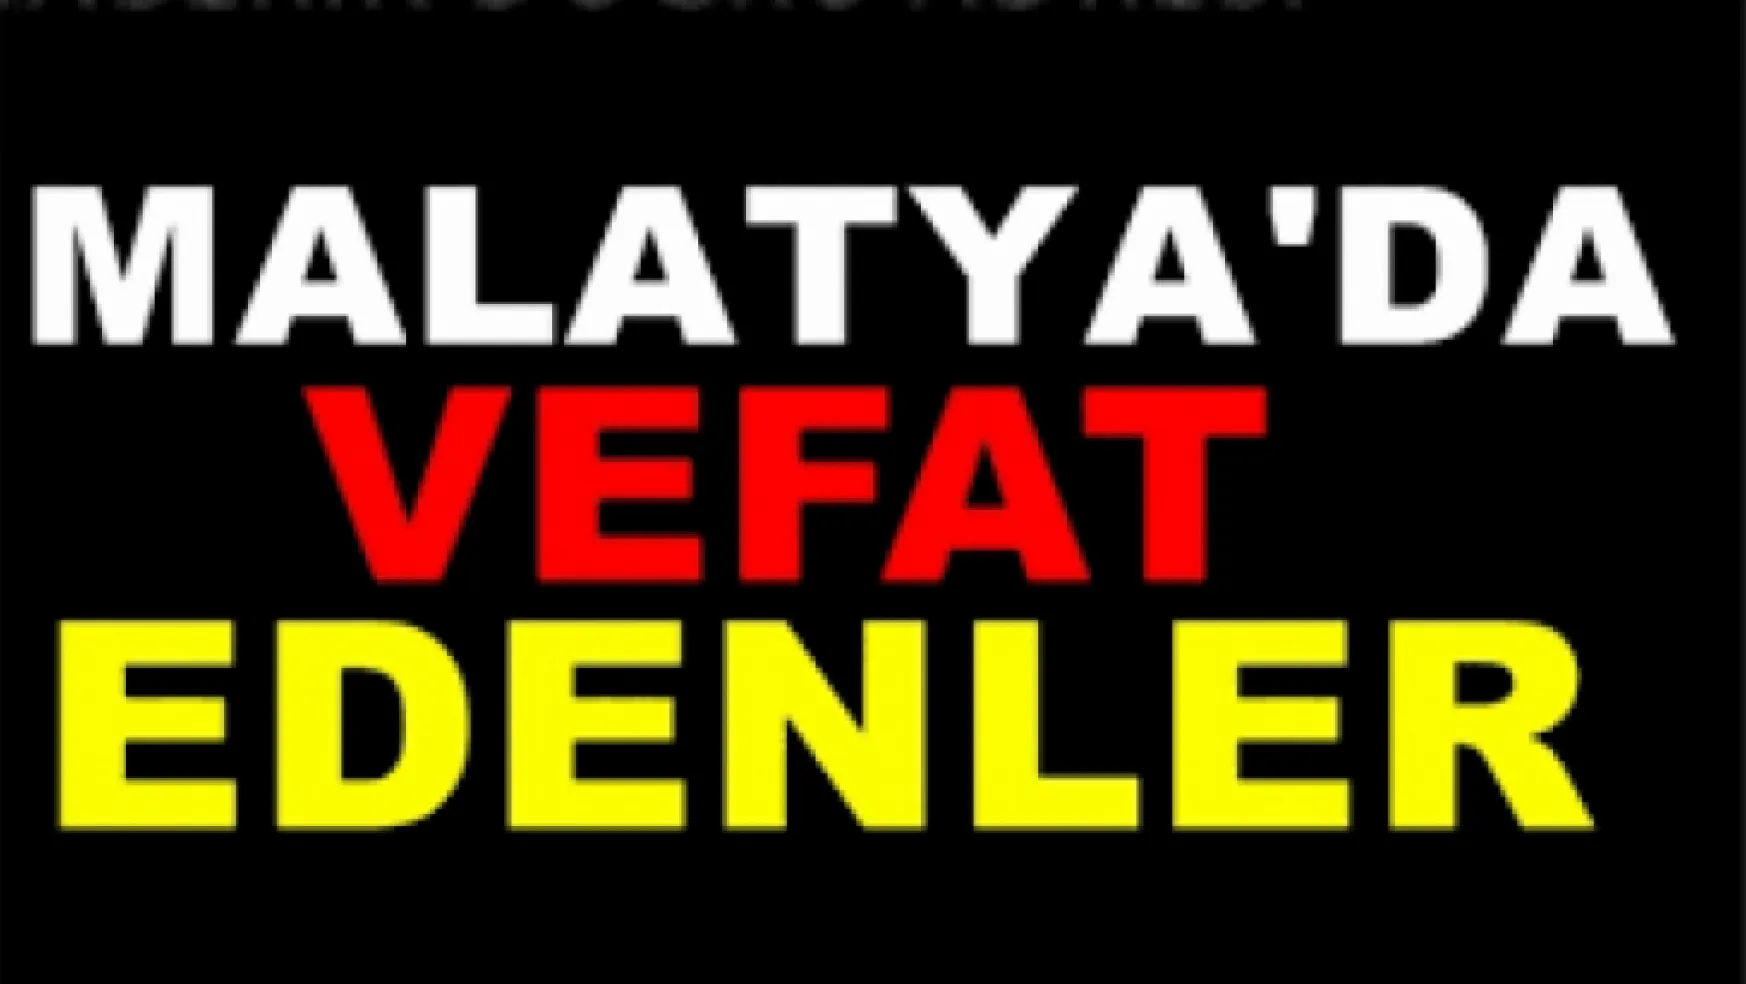 Malatya'da 02.08.2022 tarihinde 15 kişi vefat etti